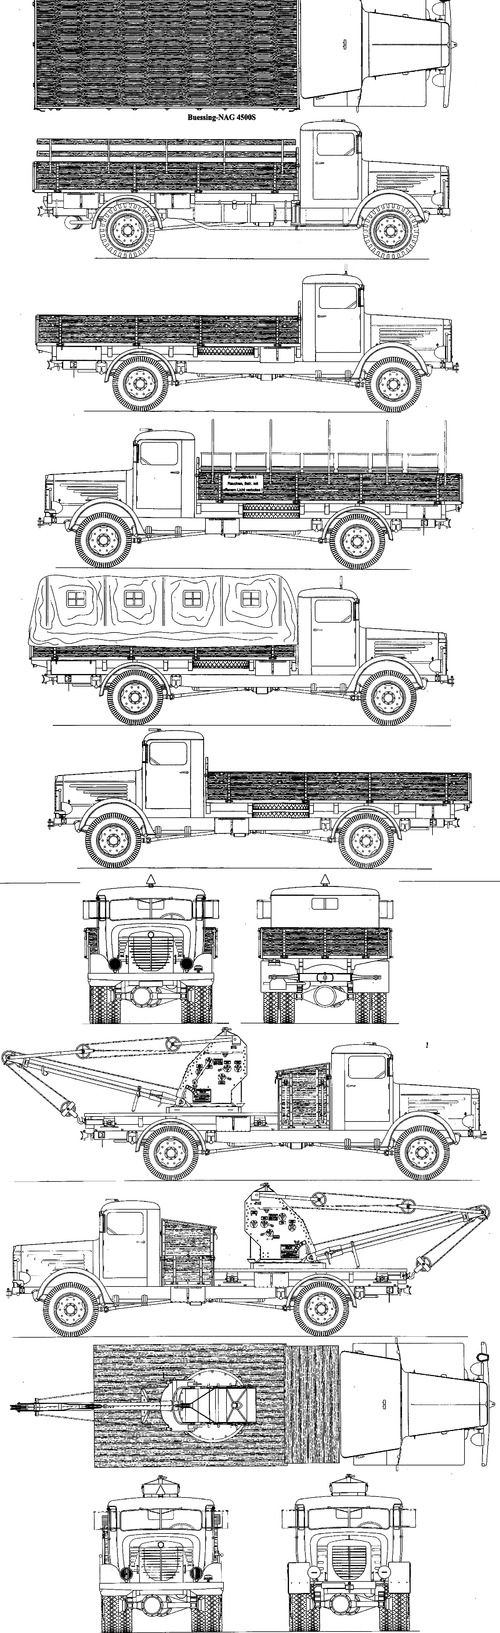 Bussing-NAG 4500A 2